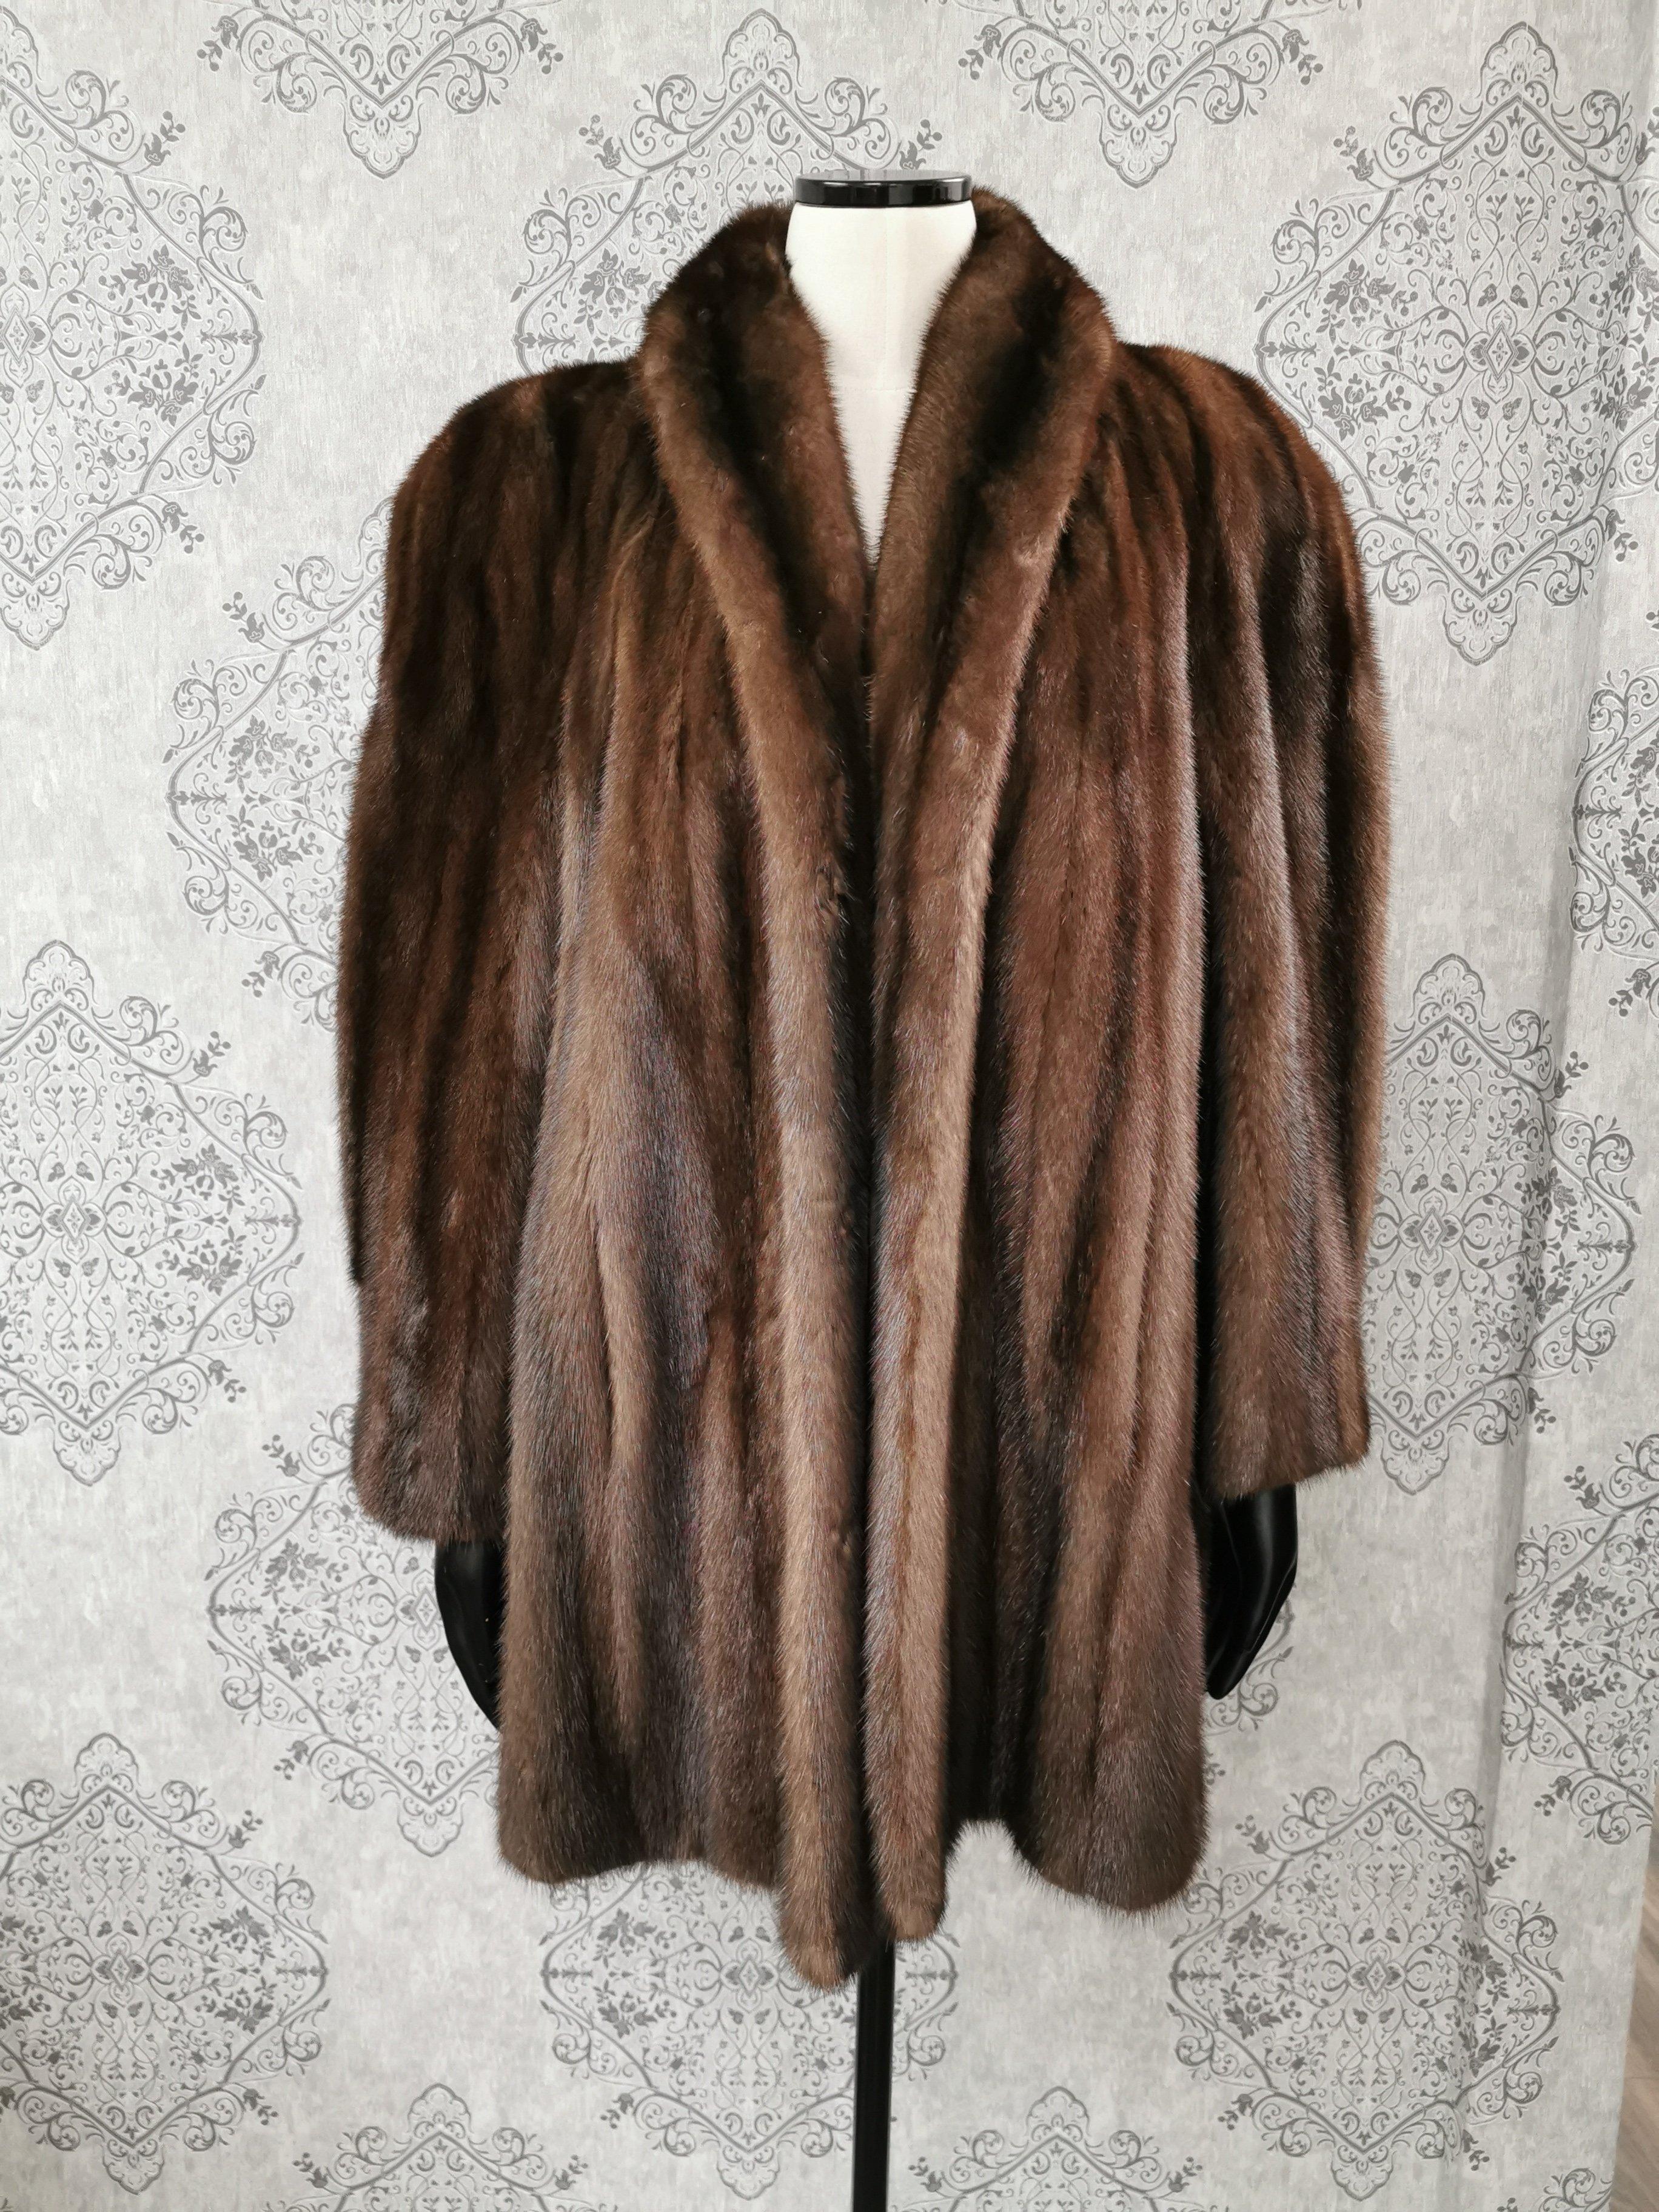 donna karan fur coat